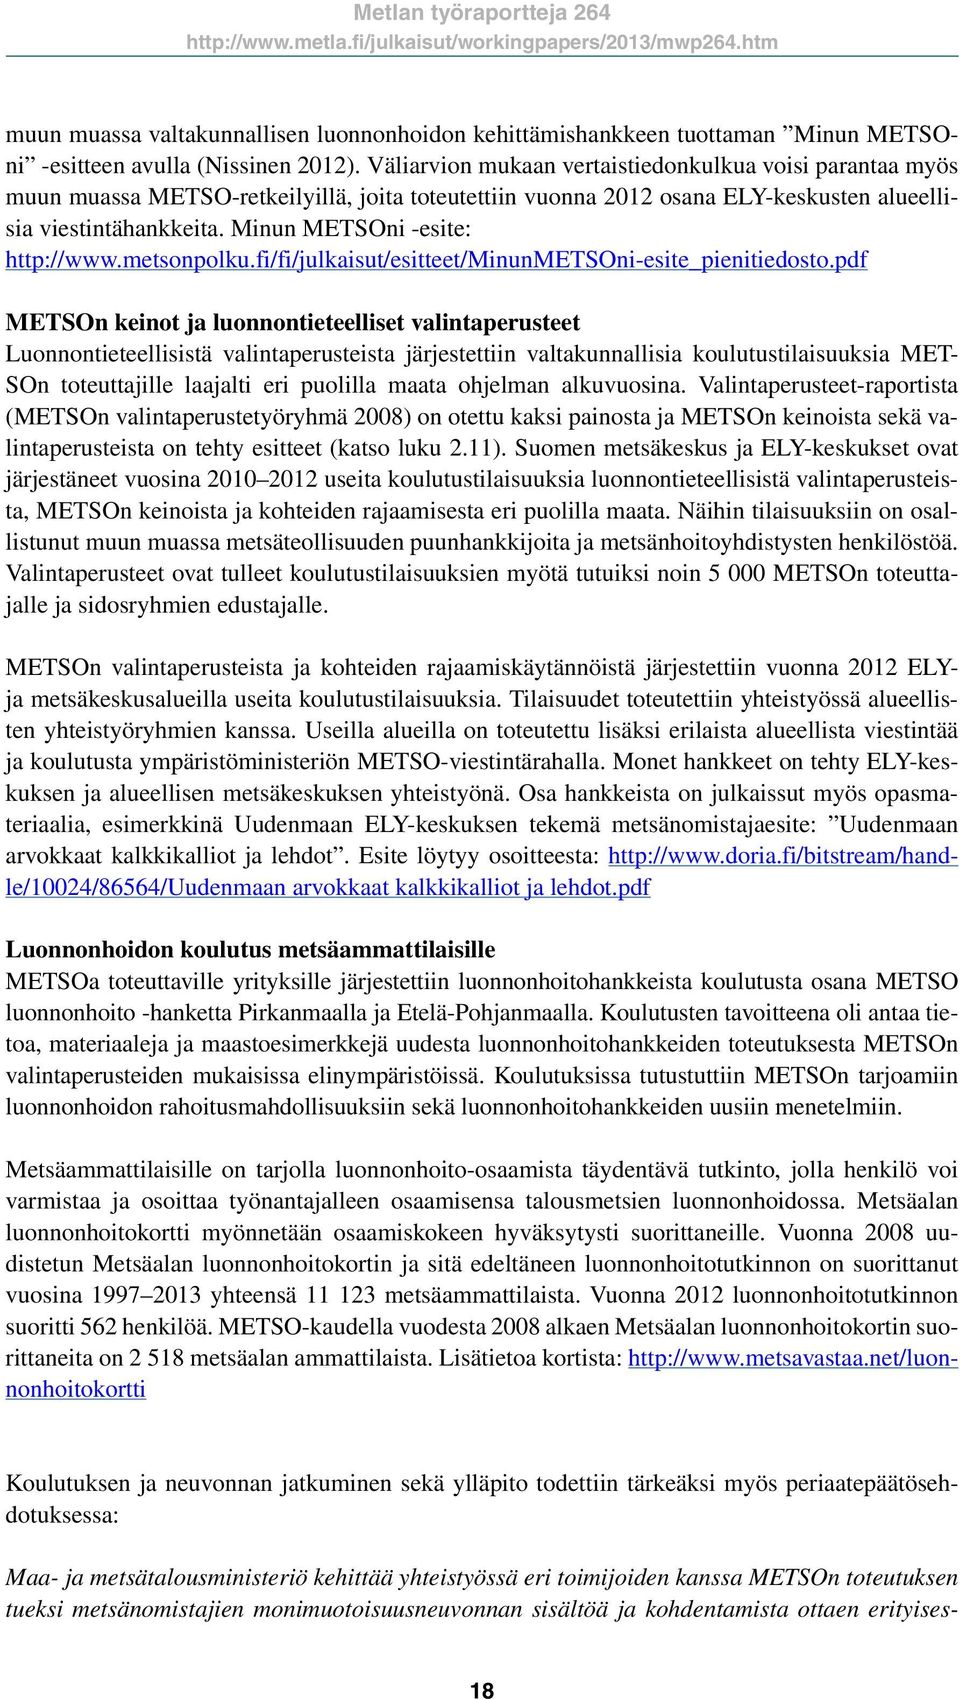 Minun METSOni -esite: http://www.metsonpolku.fi/fi/julkaisut/esitteet/minunmetsoni-esite_pienitiedosto.